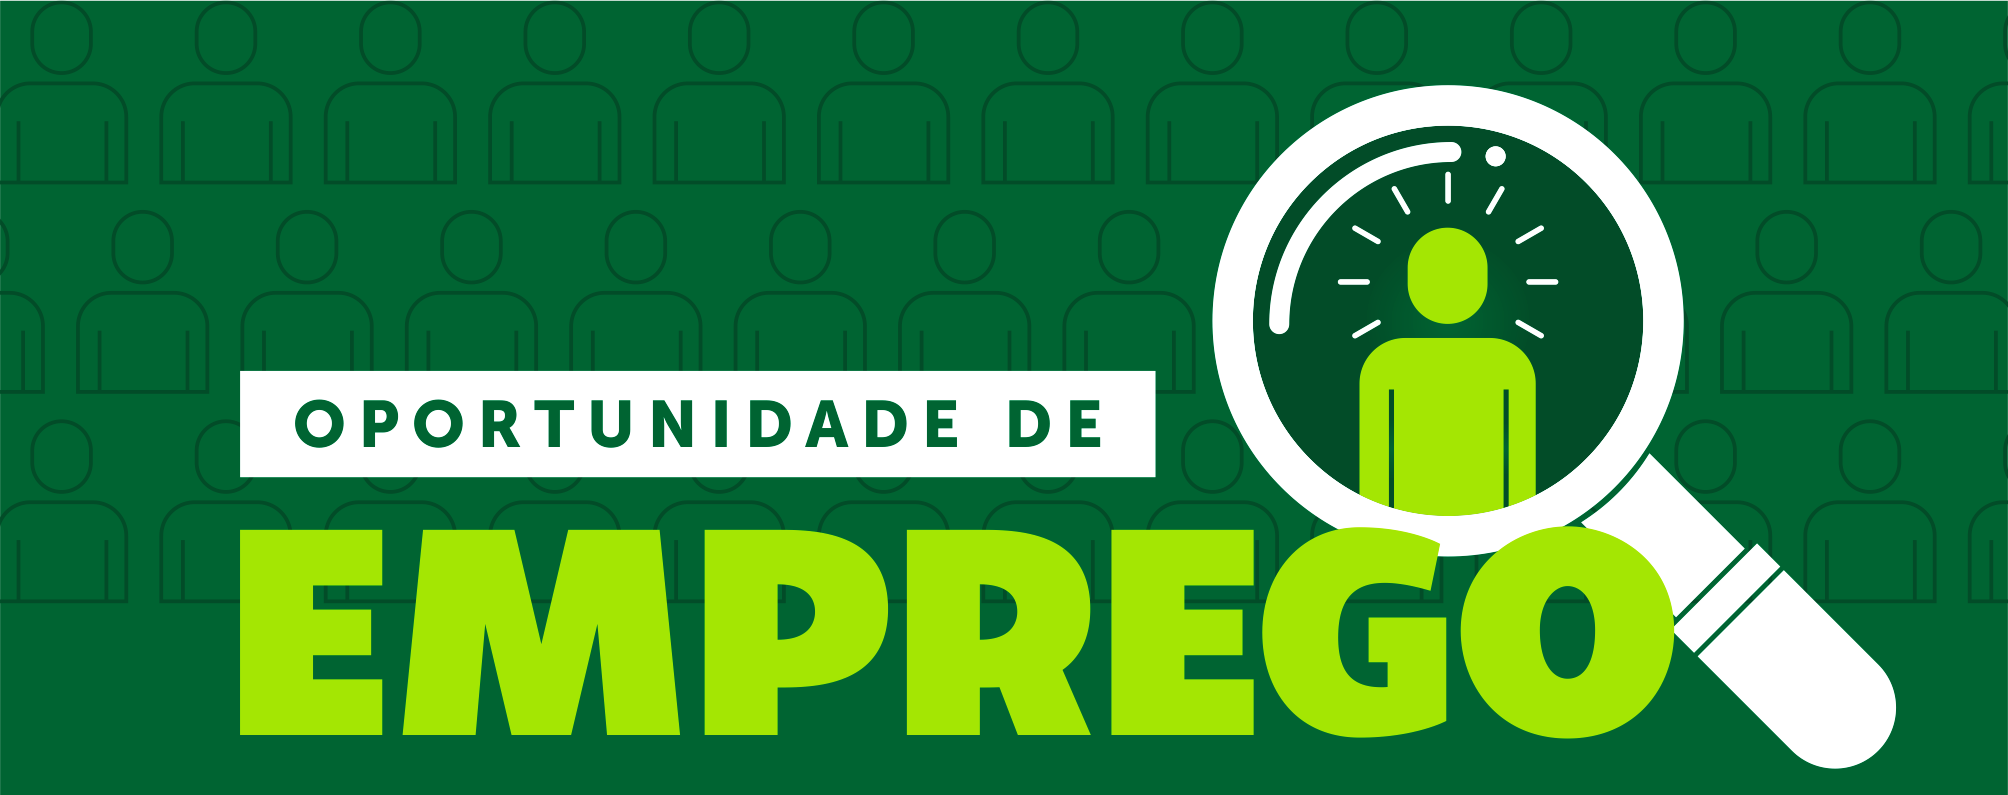 Vendedor(a) Shopping Curitiba – Salário Fixo R$ 1.847,08 + comissão e premiações